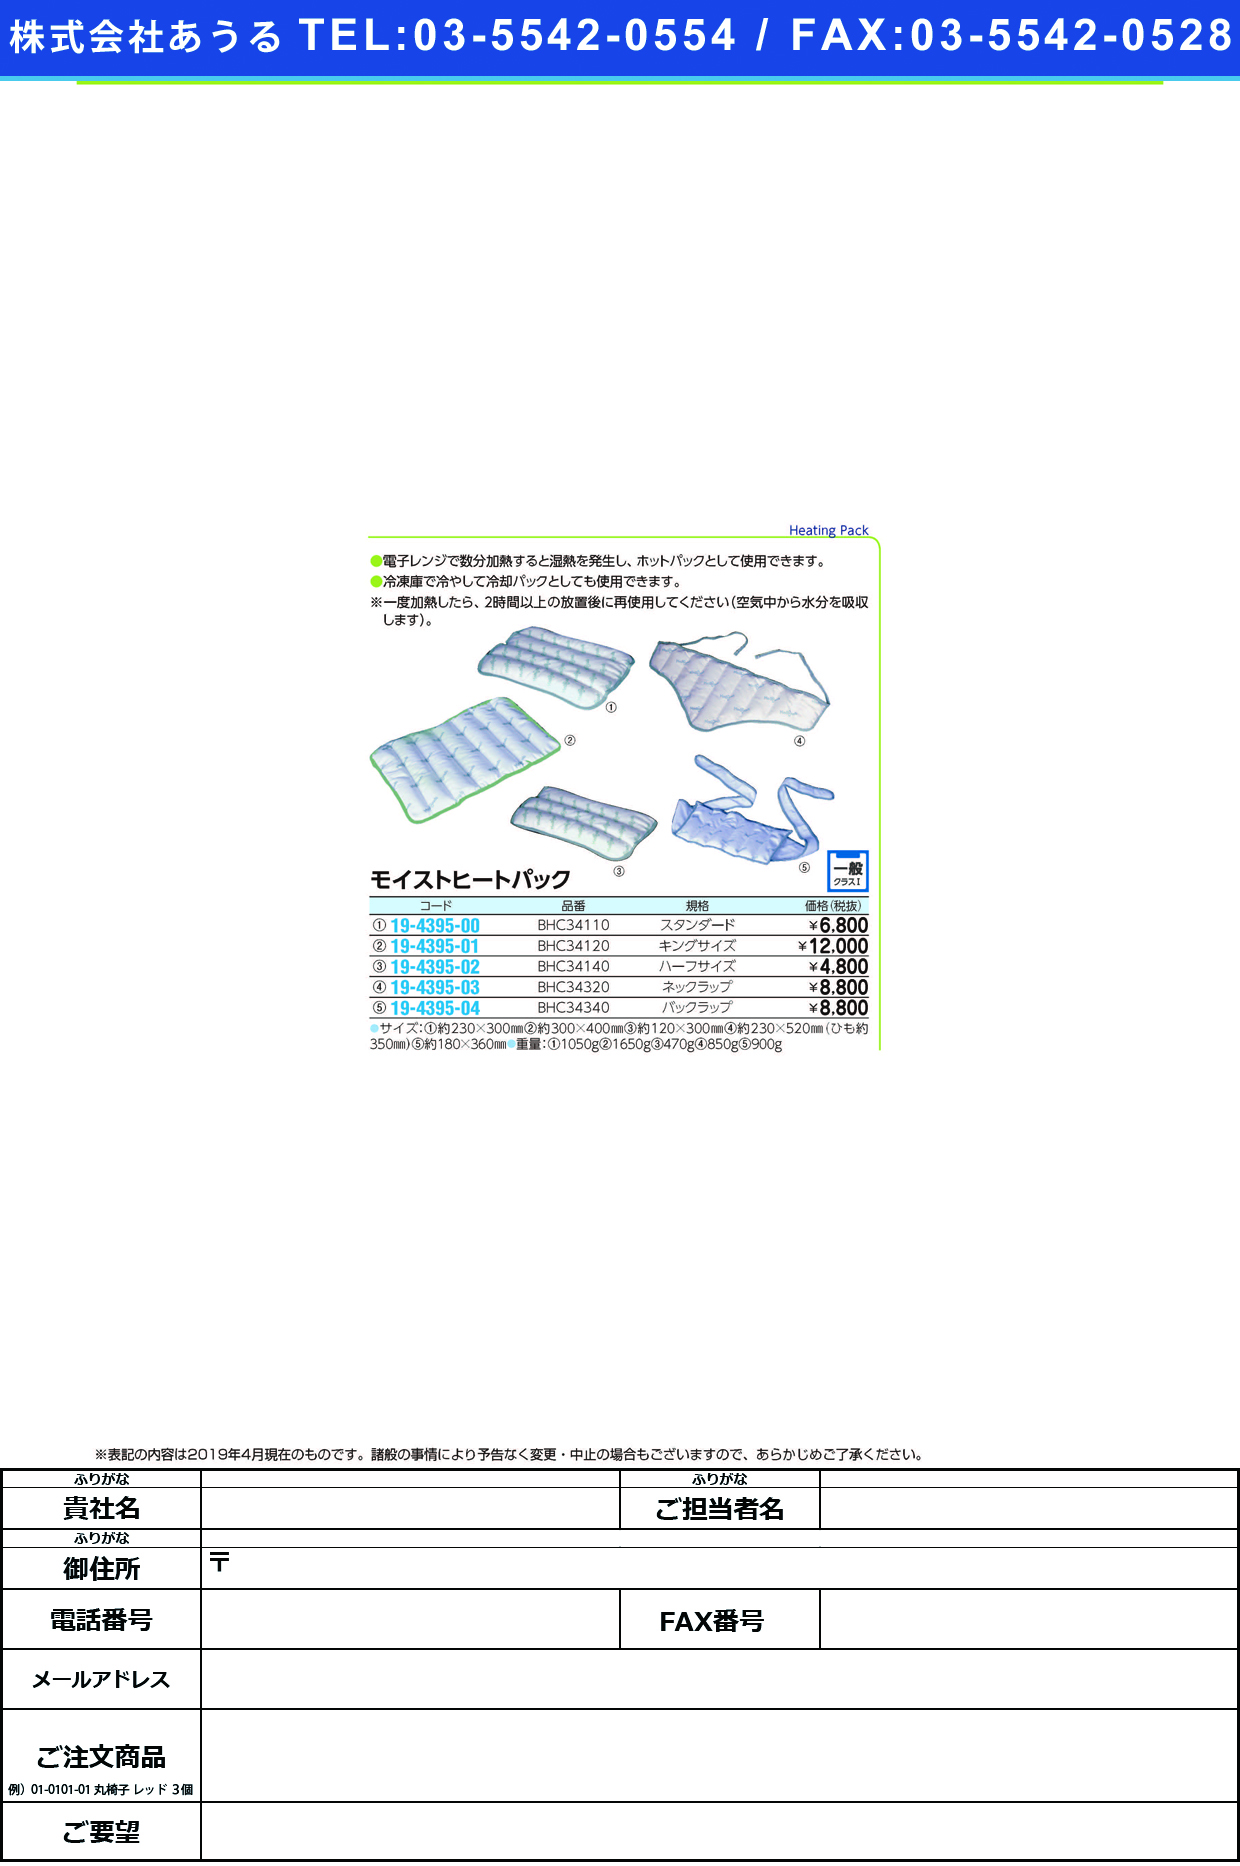 (19-4395-01)モイストヒートパックキングサイズ BHC34120 ﾓｲｽﾄﾋｰﾄﾊﾟｯｸｷﾝｸﾞｻｲｽﾞ【1個単位】【2019年カタログ商品】